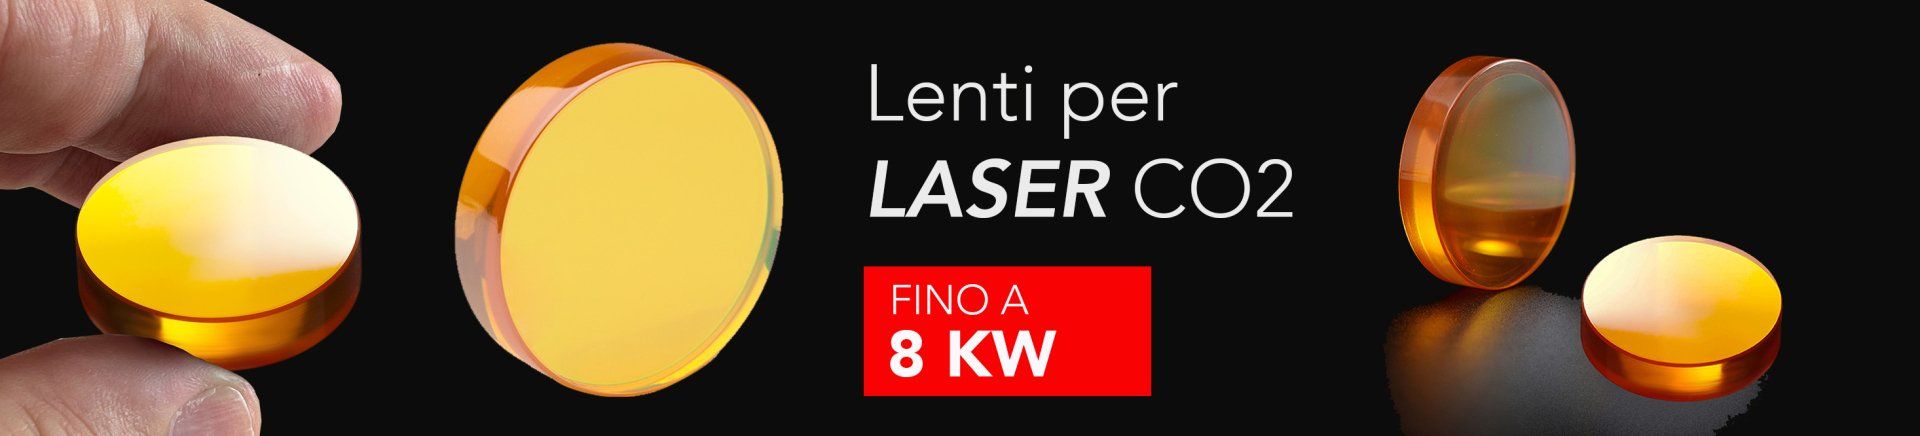 vendita lenti laser